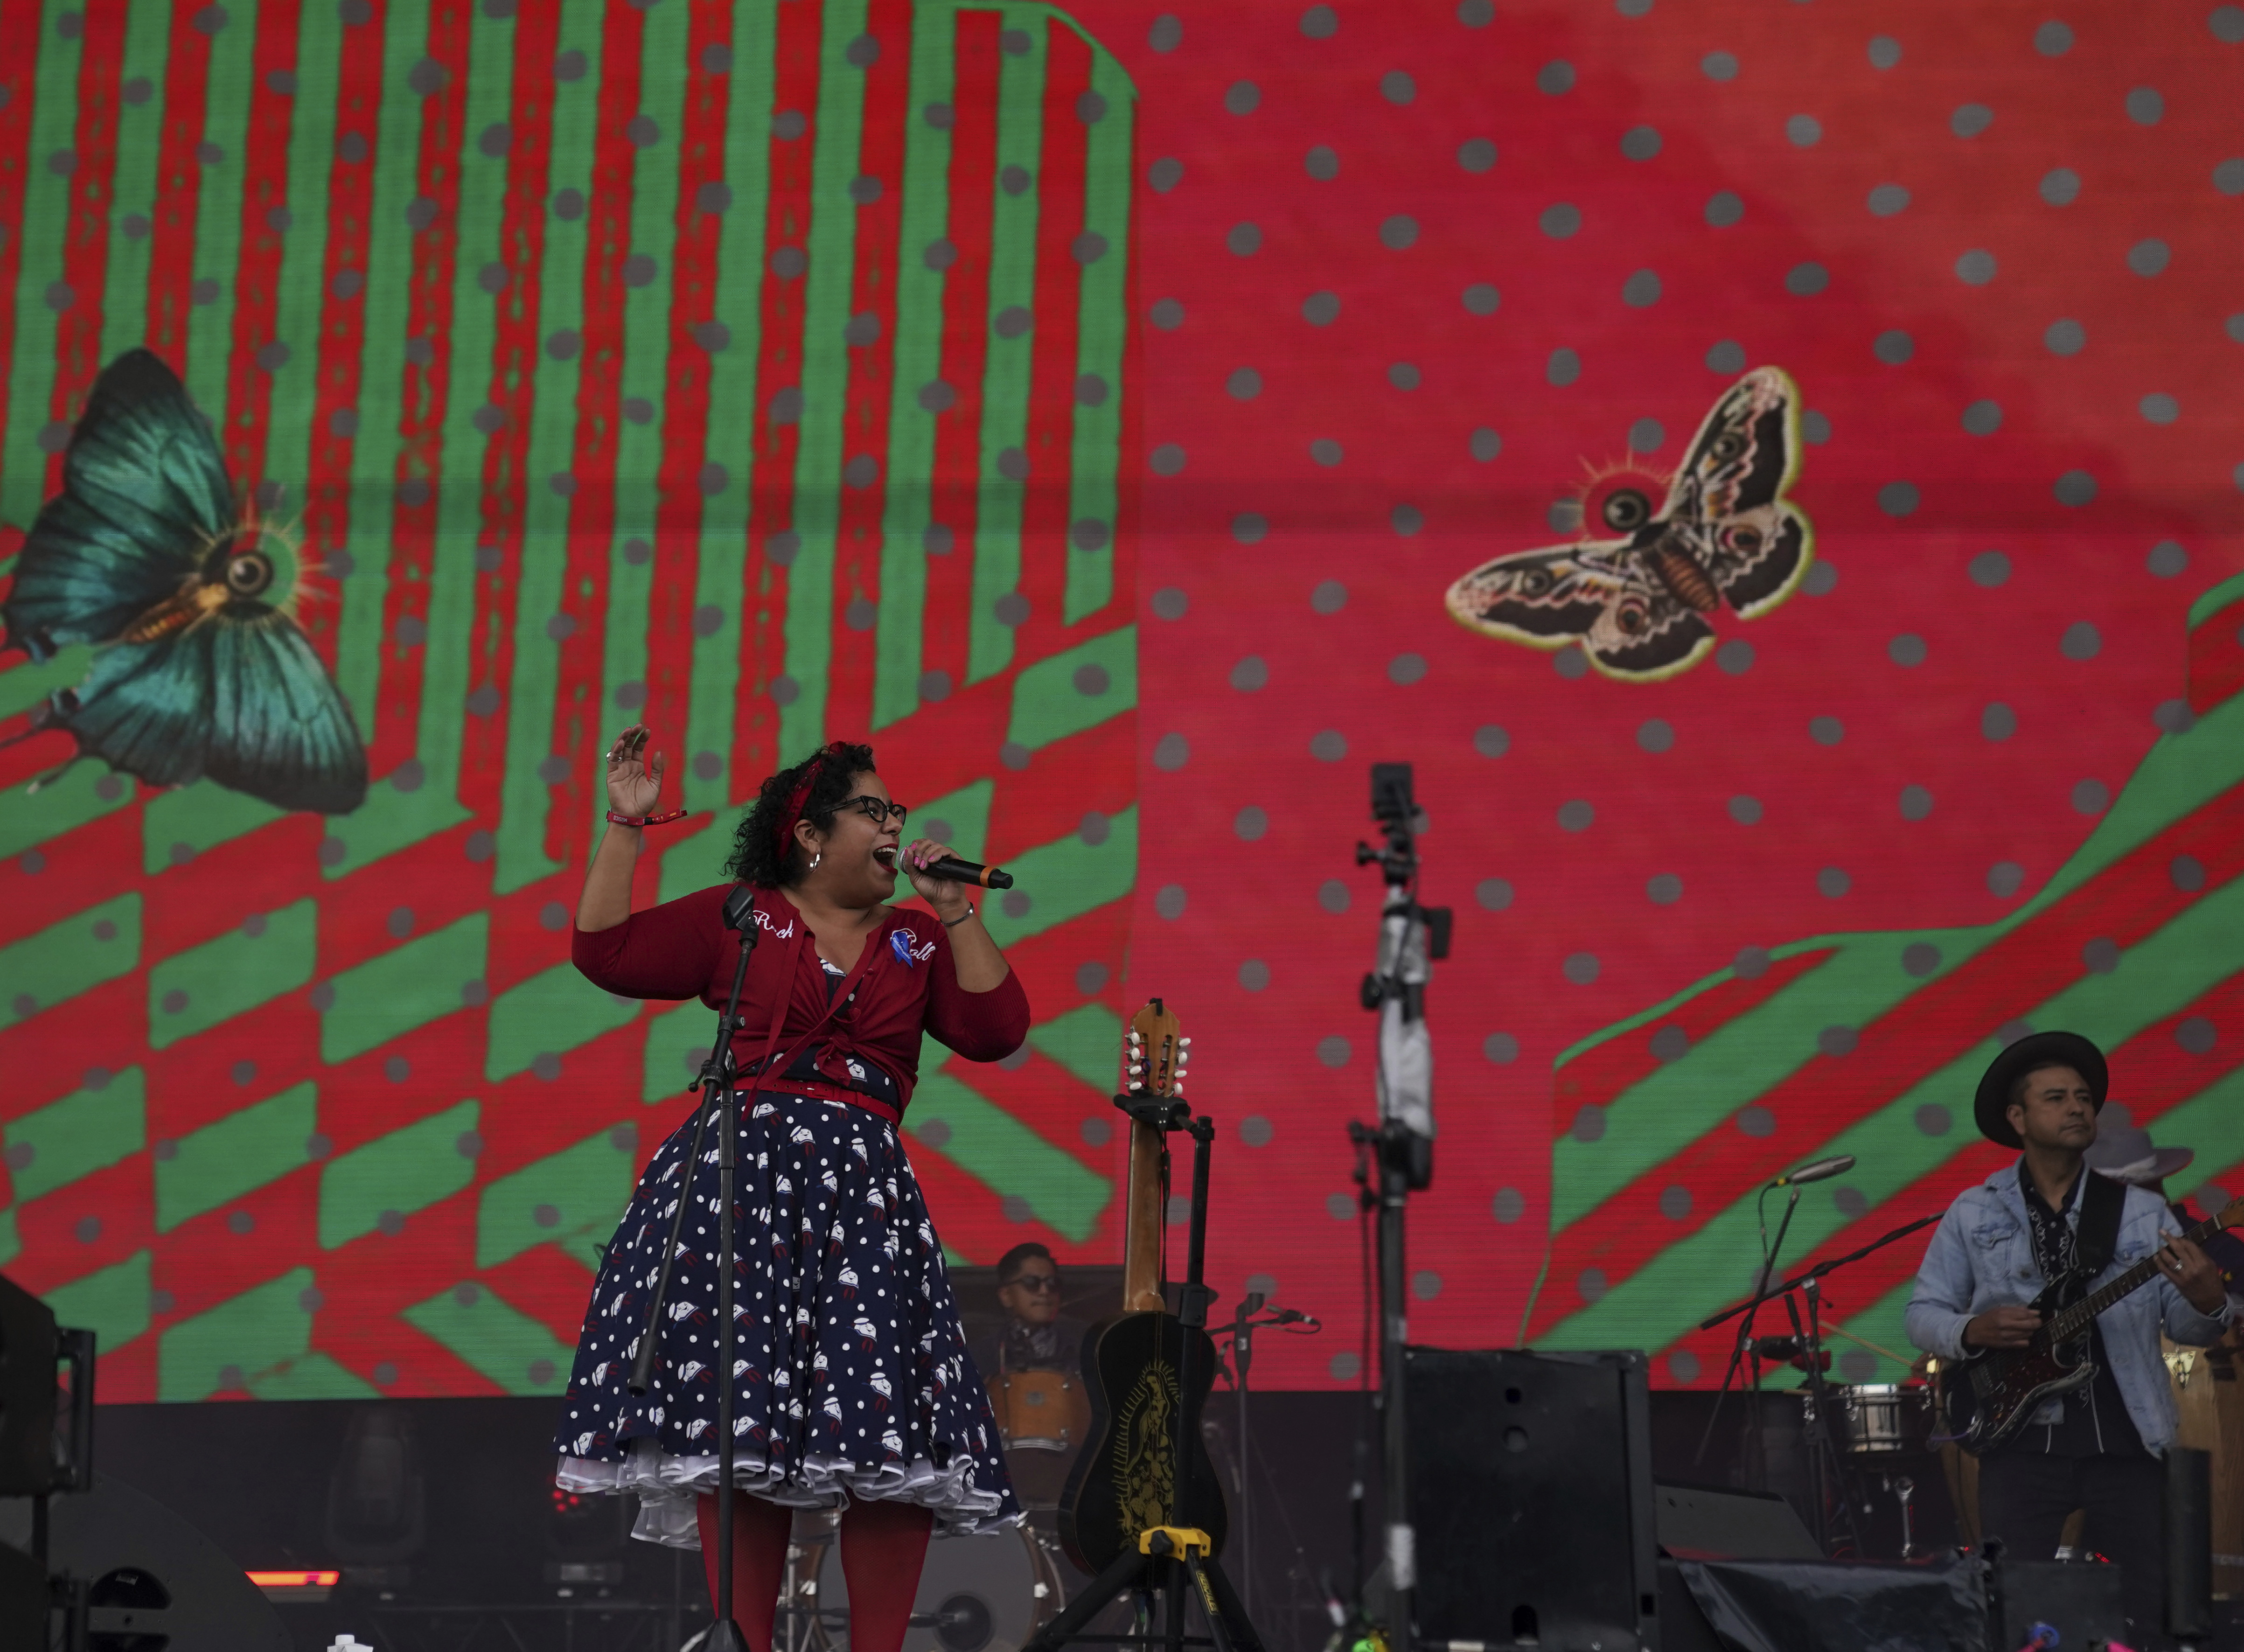 Marisol "La Marisoul" Hernández vocalista de la banda mexico-estadounidense La Santa Cecilia durante su presentación en el festival Vive Latino en la Ciudad de México el sábado 18 de marzo de 2023. (Foto AP/Fernando Llano)